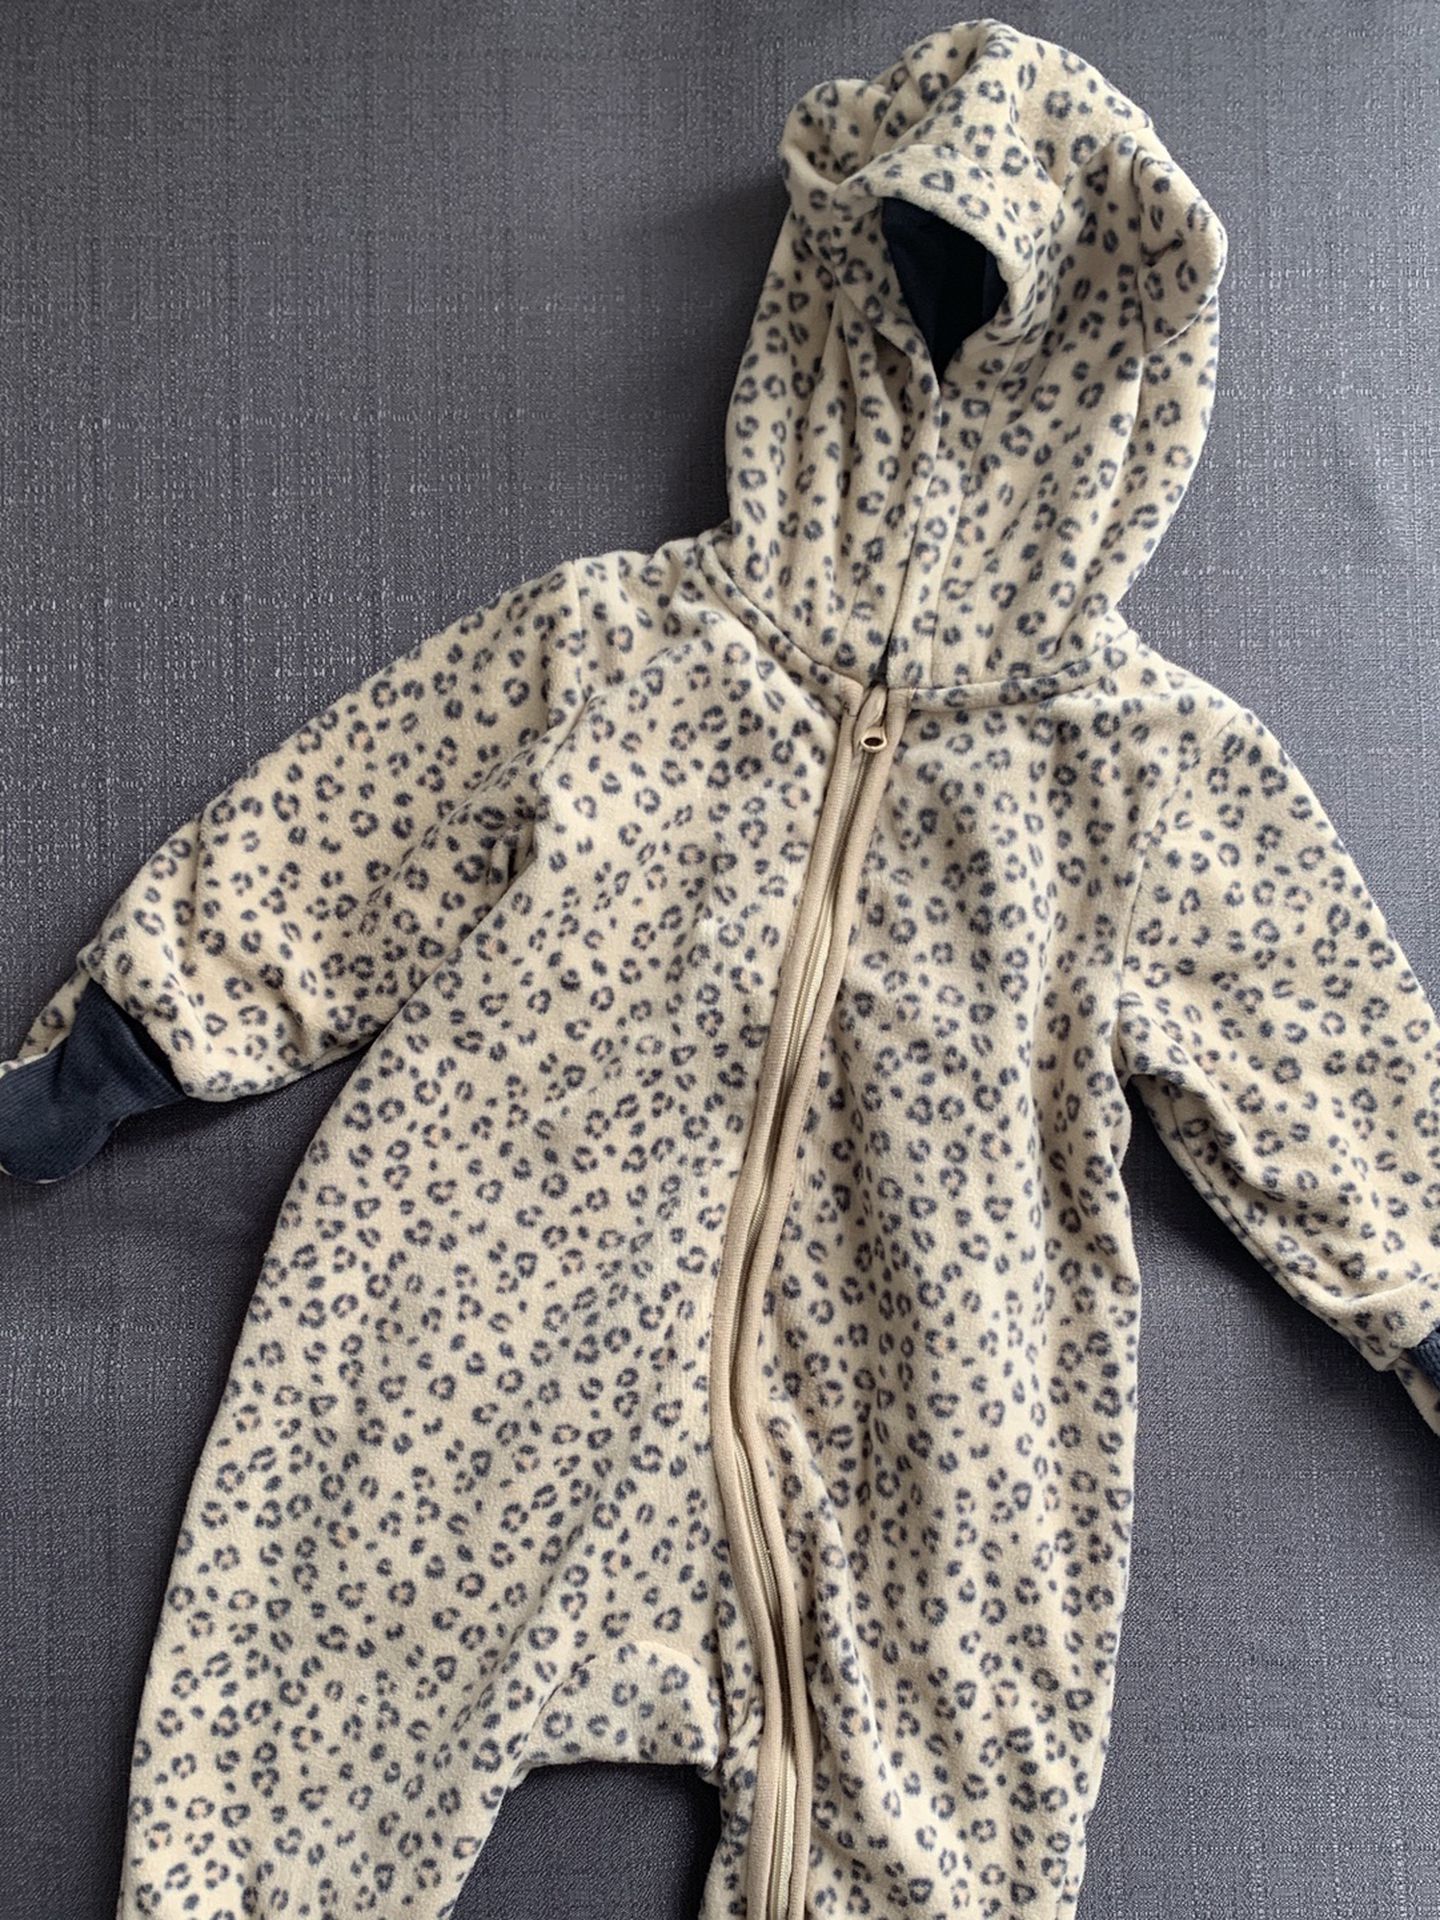 H&M Leopard Print Baby Snow Suit Size 6-9 Months